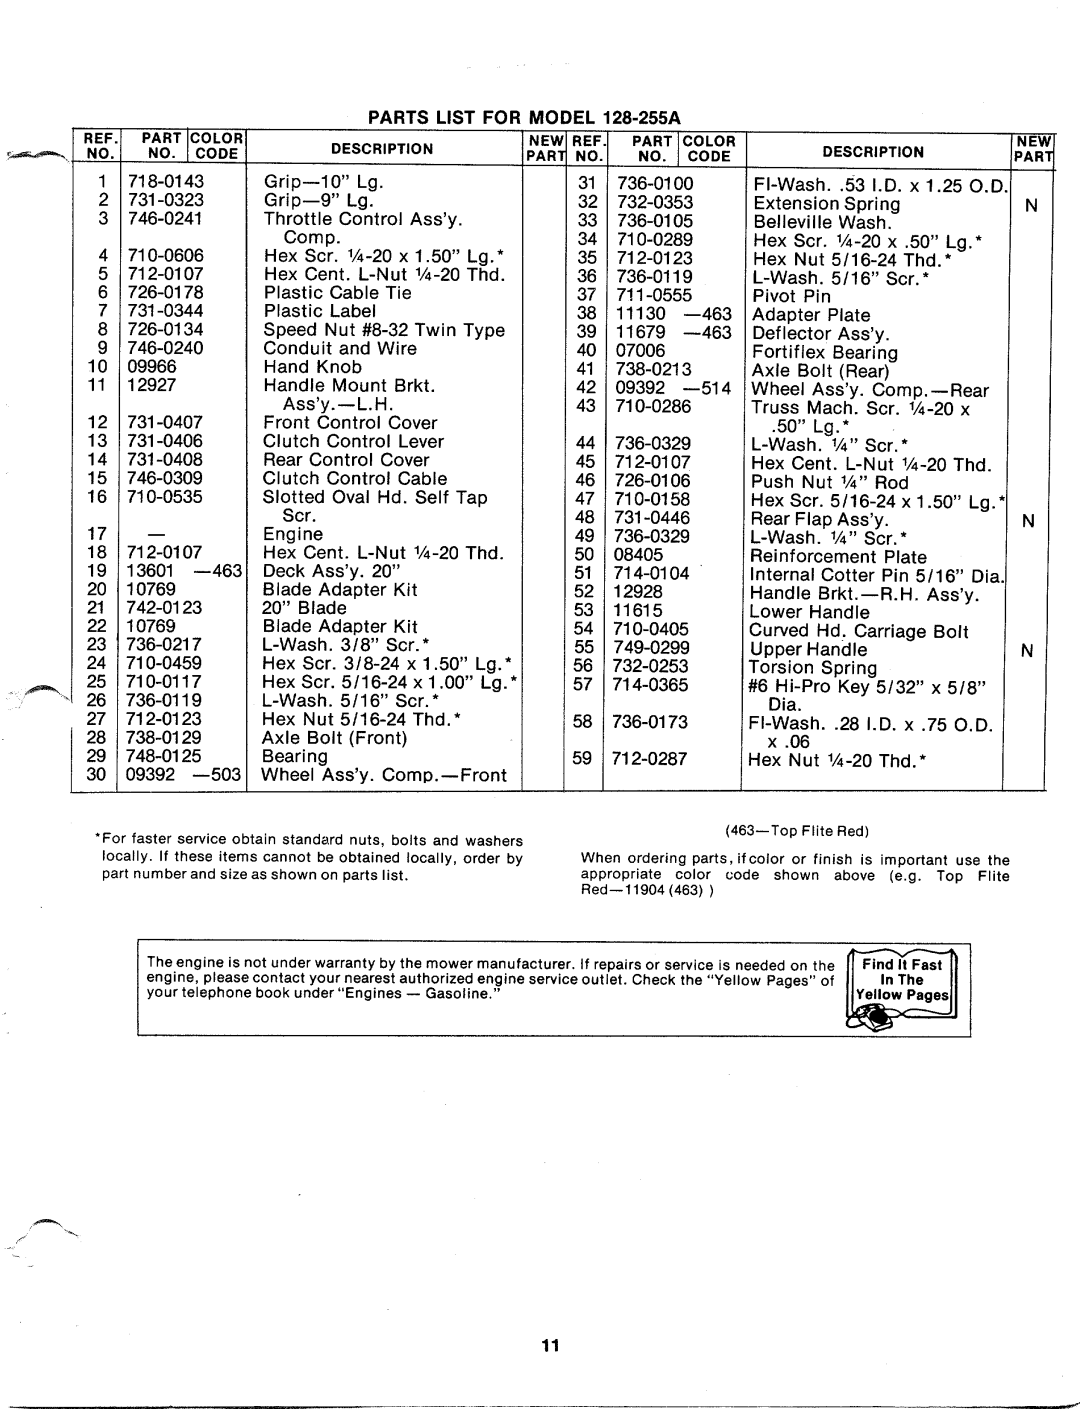 MTD 128-255A manual 